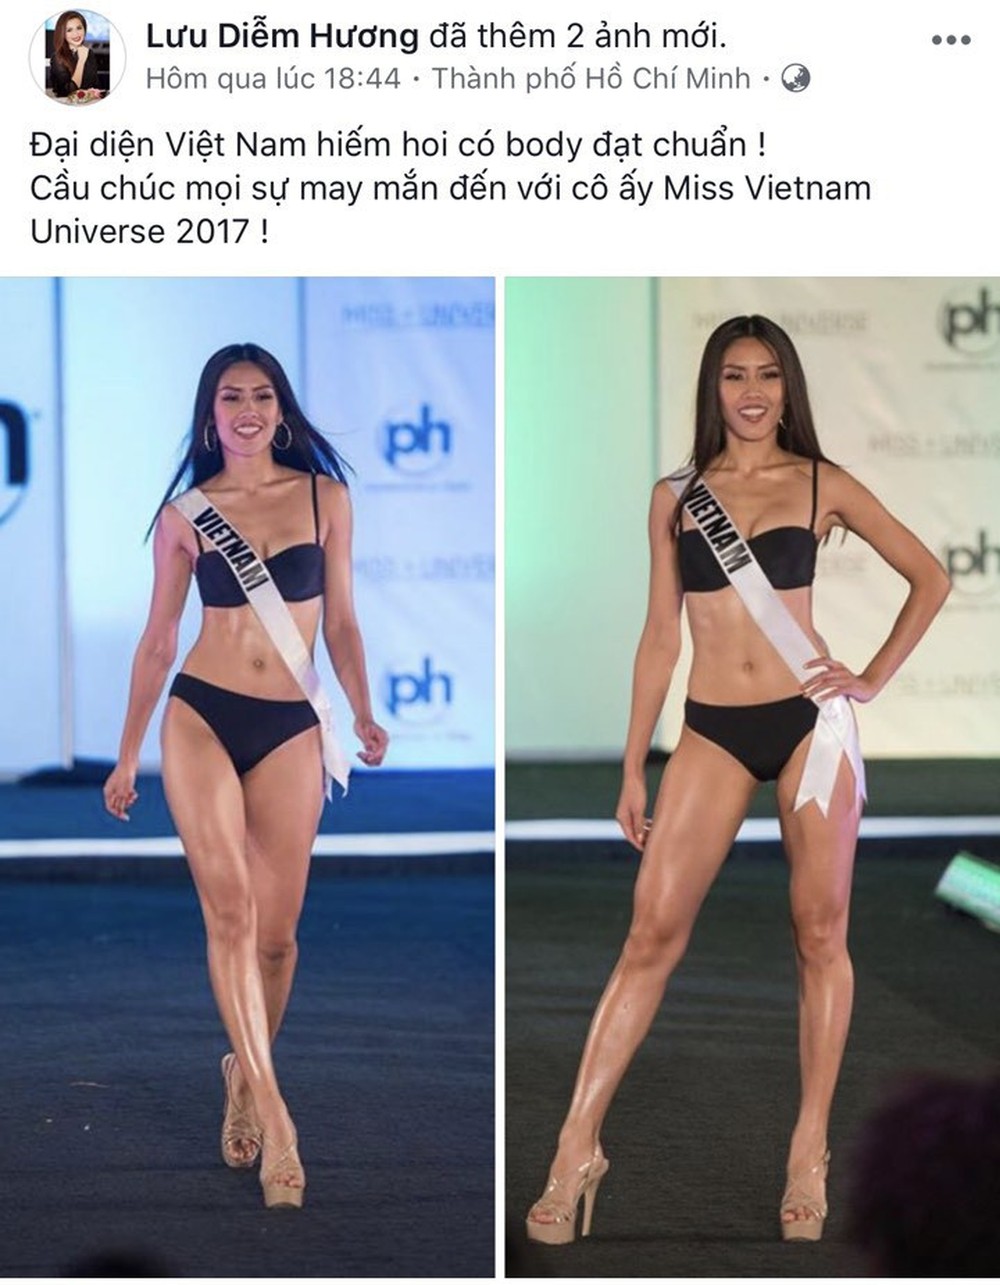 Mỹ nhân Việt gửi lời chúc đến Nguyễn Thị Loan trước chung kết Miss Universe - Ảnh 6.